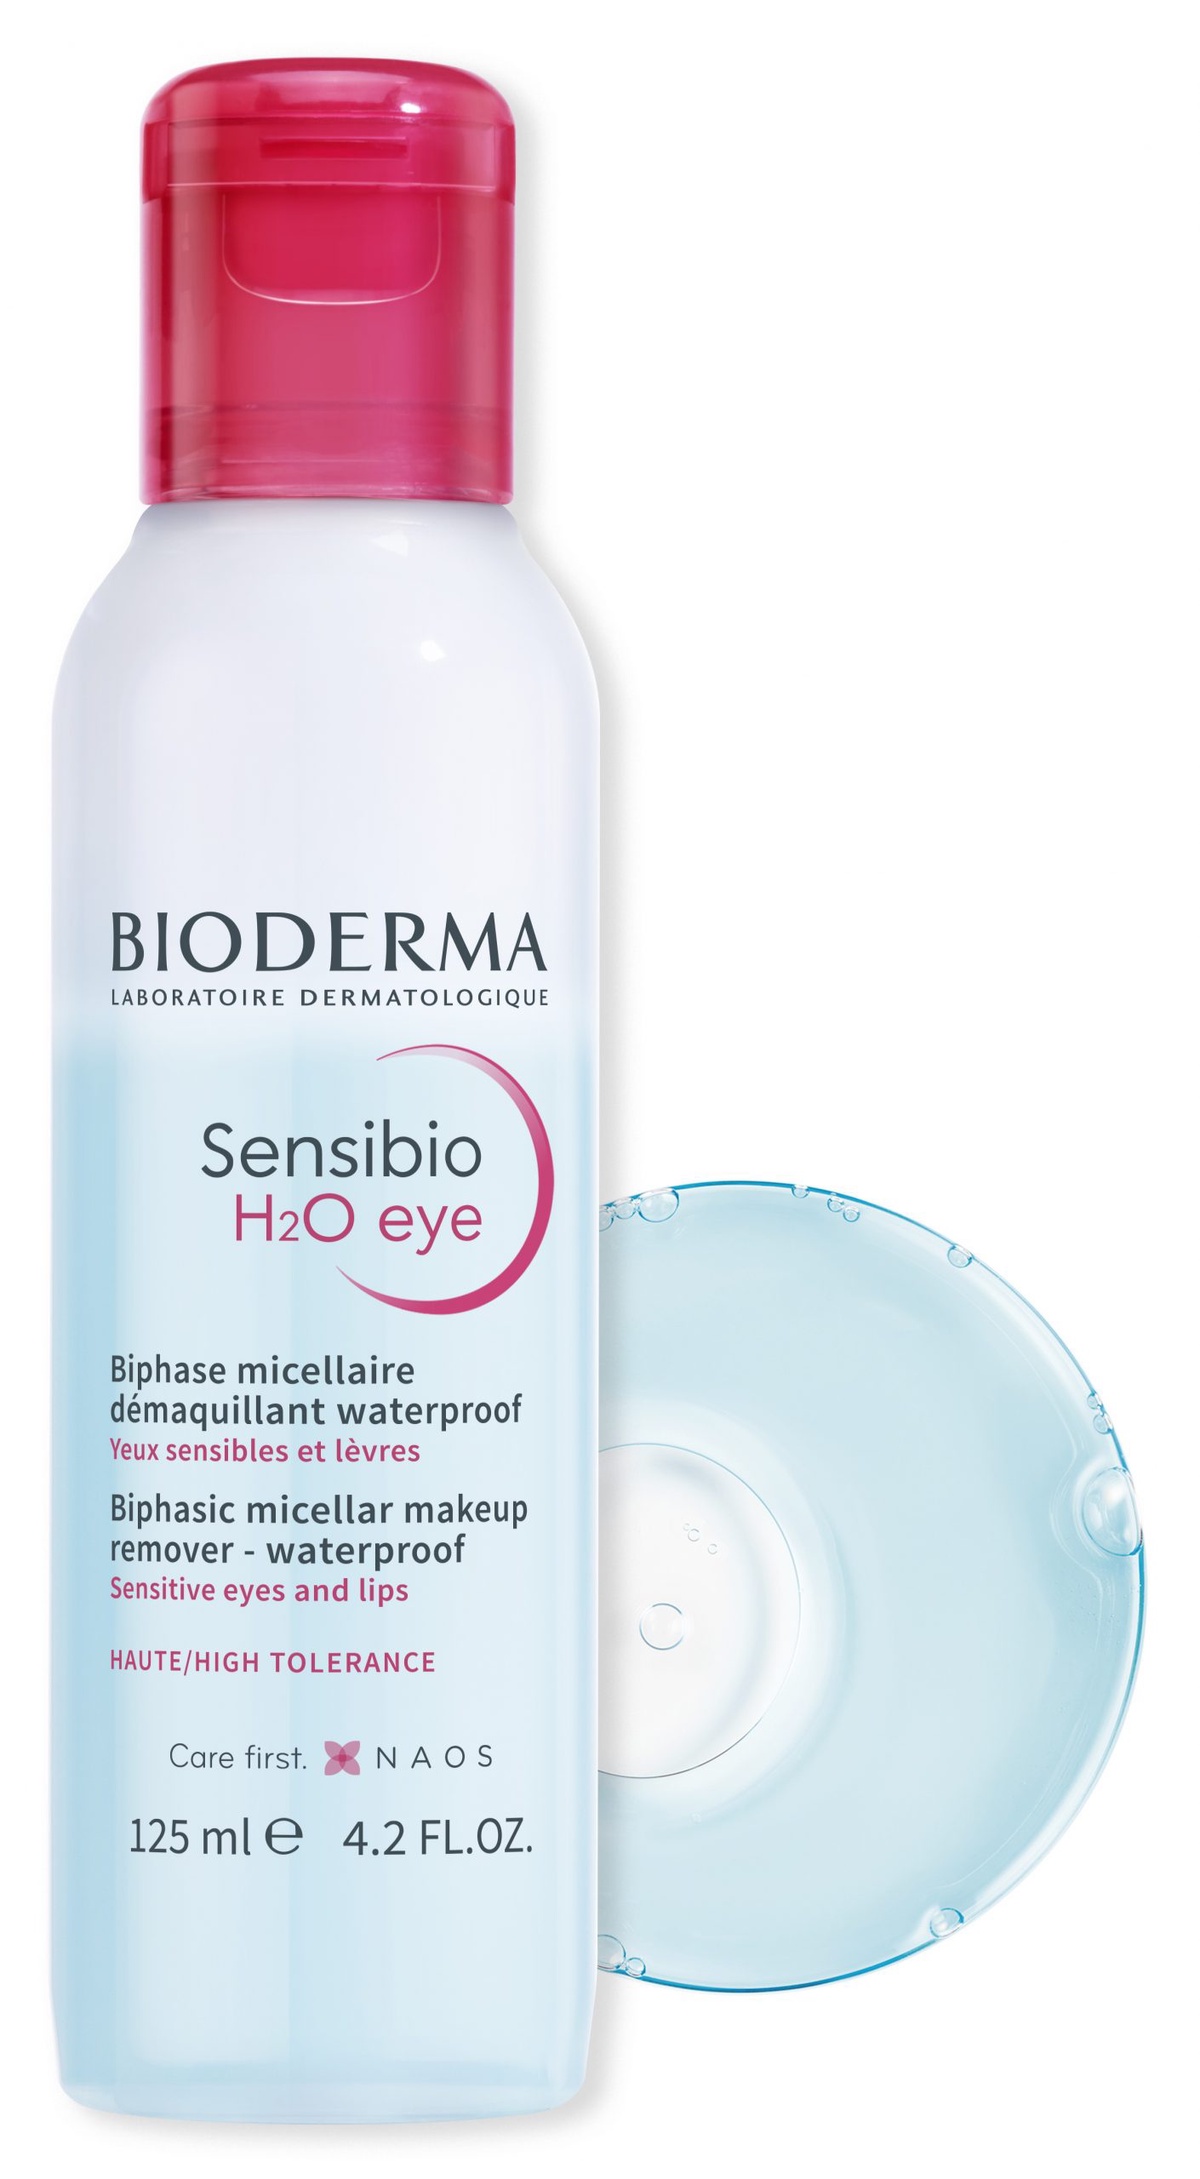 BIODERMA Sensibio H2O eye ใหม่! ผลิตภัณฑ์ทำความสะอาดผิวรอบดวงตาและริมฝีปาก ลบง่าย หมดจด ไม่แสบ พร้อมบำรุงขนตา